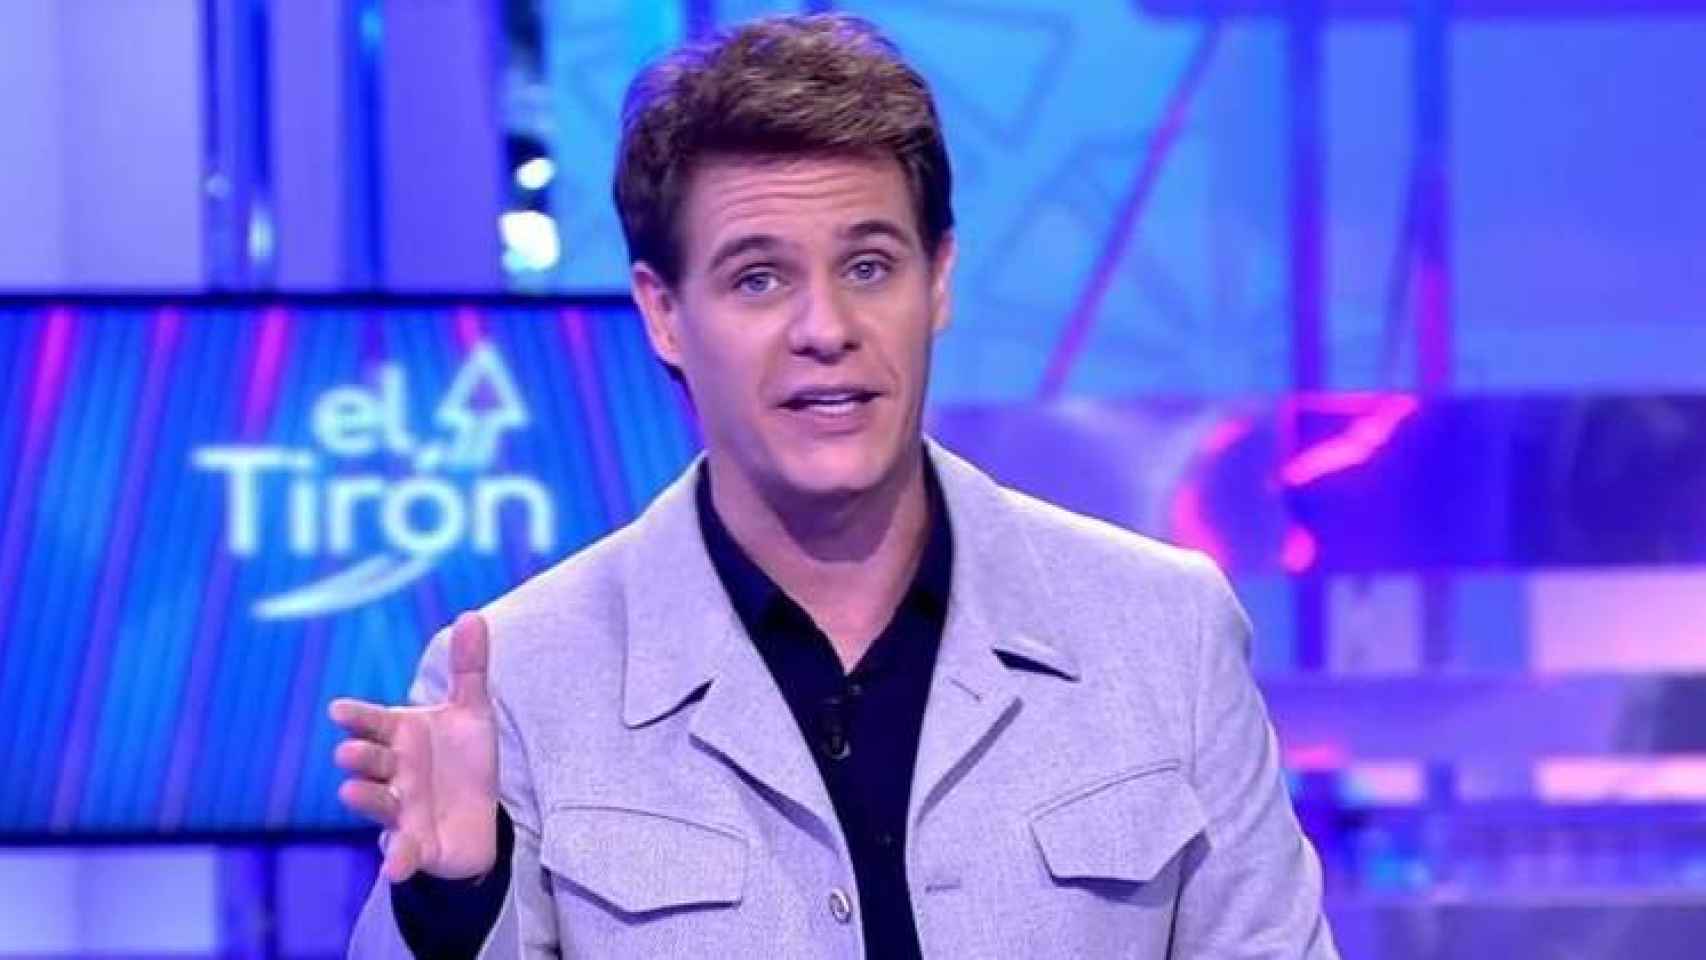 Christian Gálvez durante la emisión de un programa de 'El Tirón'.